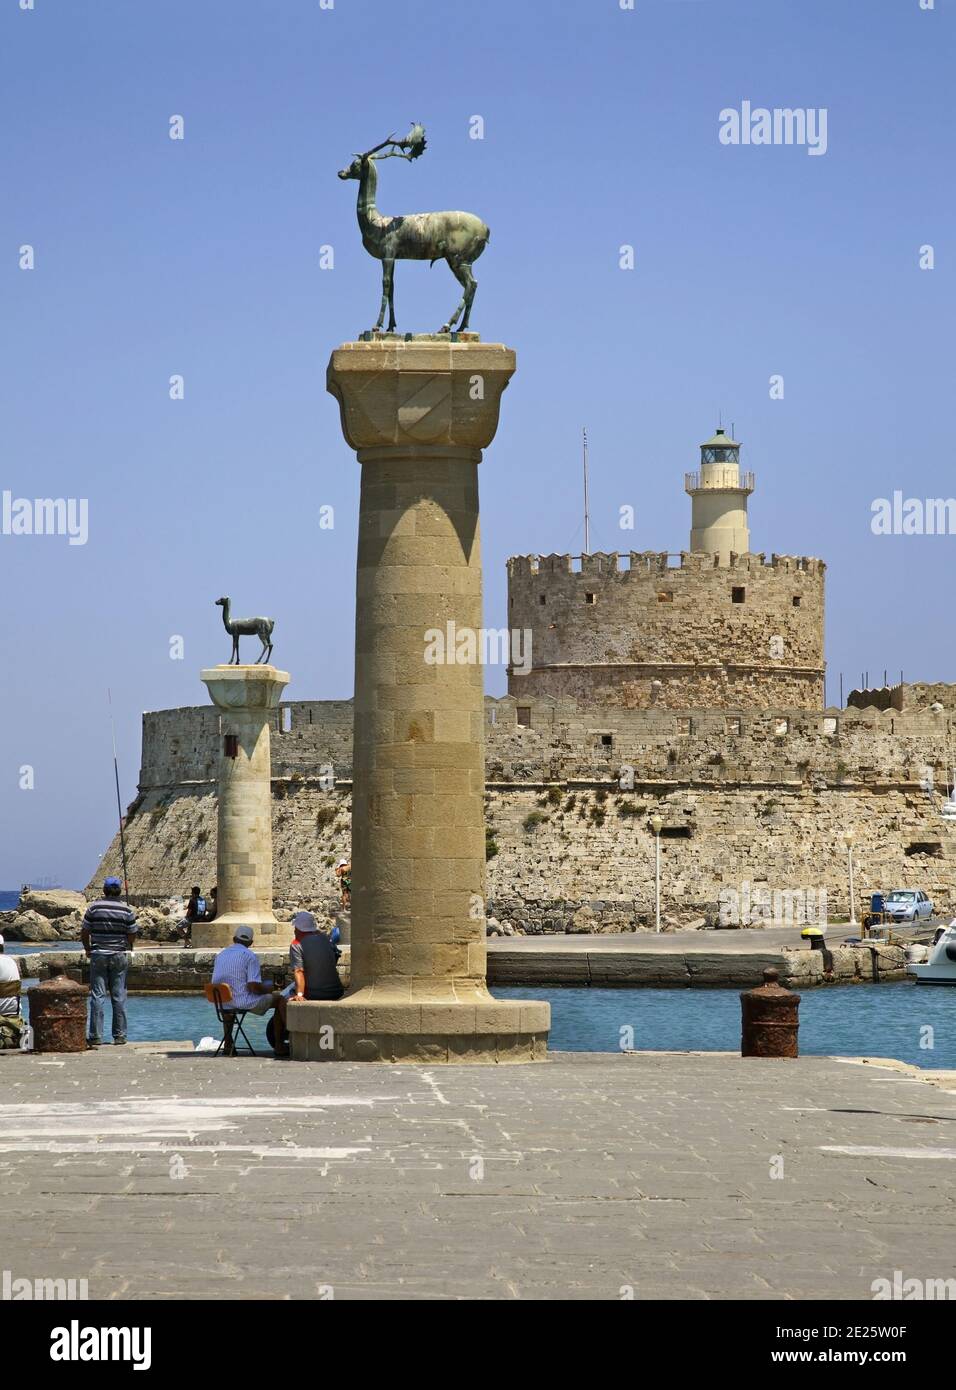 Cerf de bronze et fort de Saint-Nicolas au remblai du port de Mandraki dans la ville de Rhodes. Île de Rhodes. Grèce Banque D'Images